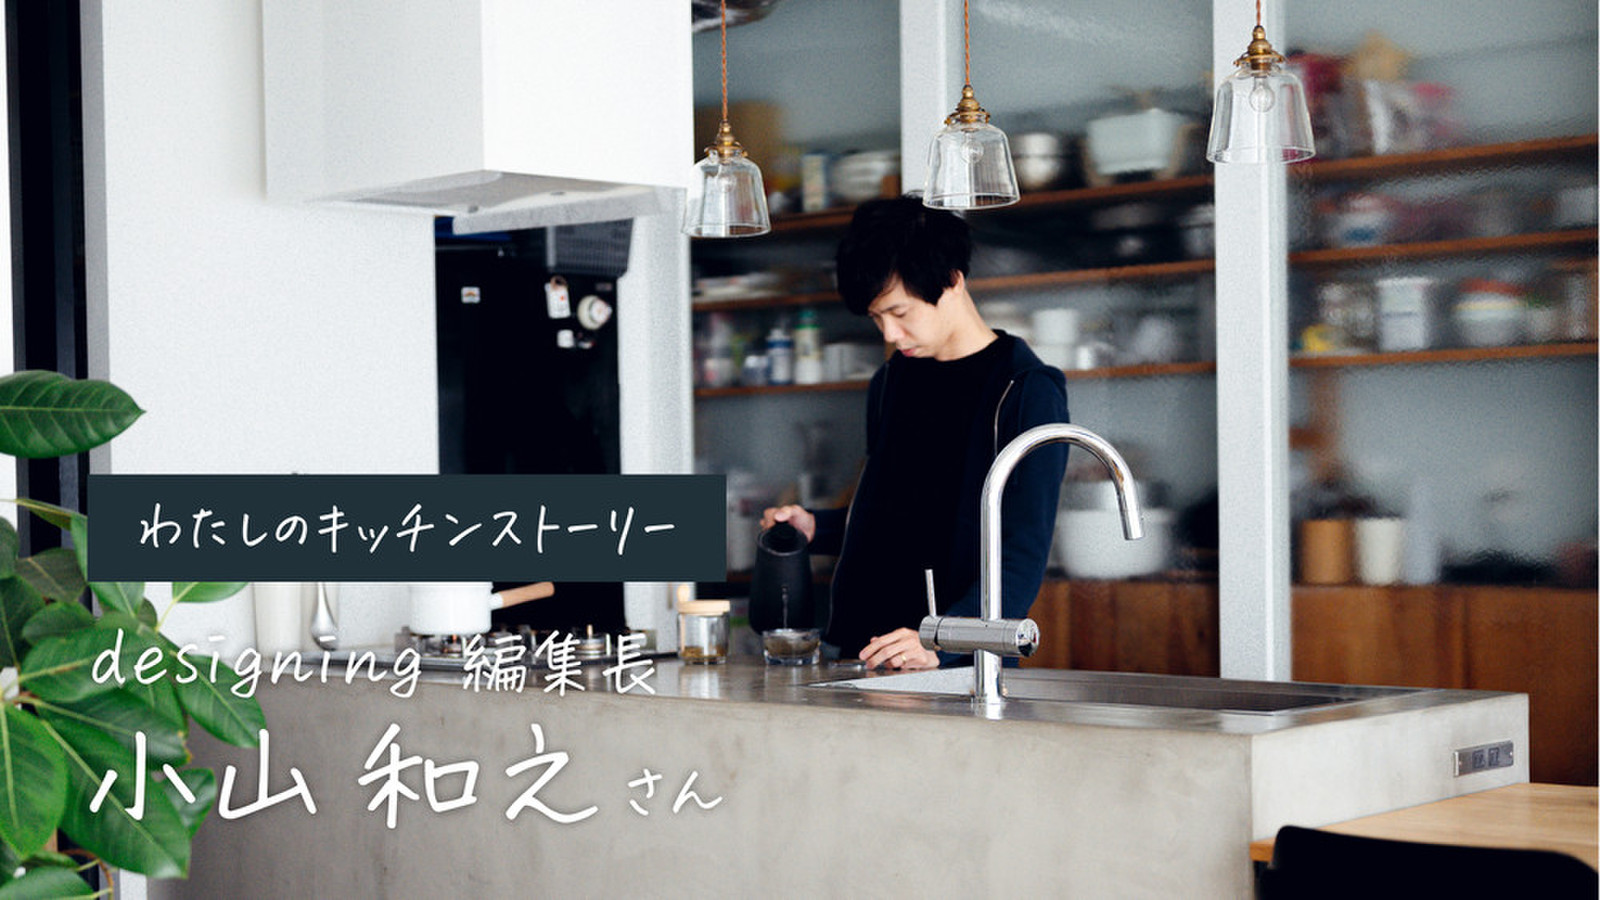 designing編集長・小山和之さんのキッチンはこだわりの集積地。自分にとっての最適解は自分でつくる